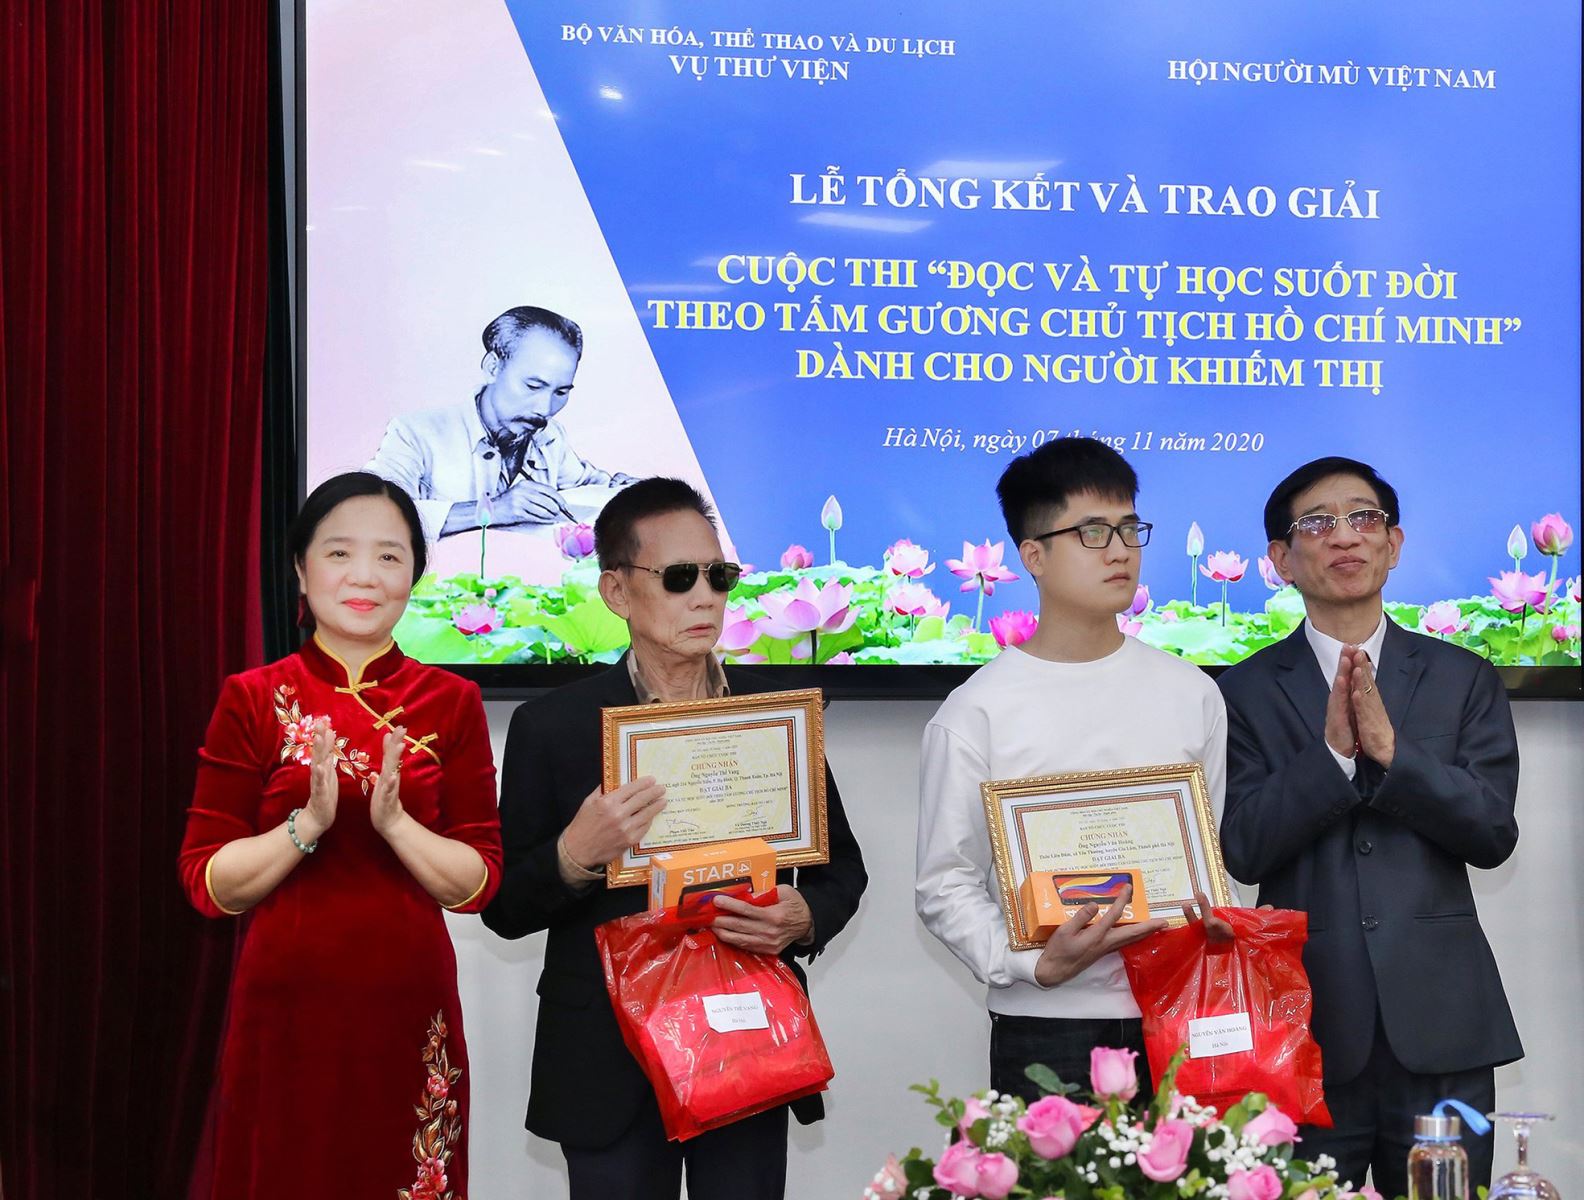 Lễ Tổng kết và trao giải Cuộc thi  “Đọc và tự học suốt đời theo tấm gương Chủ tịch Hồ Chí Minh”